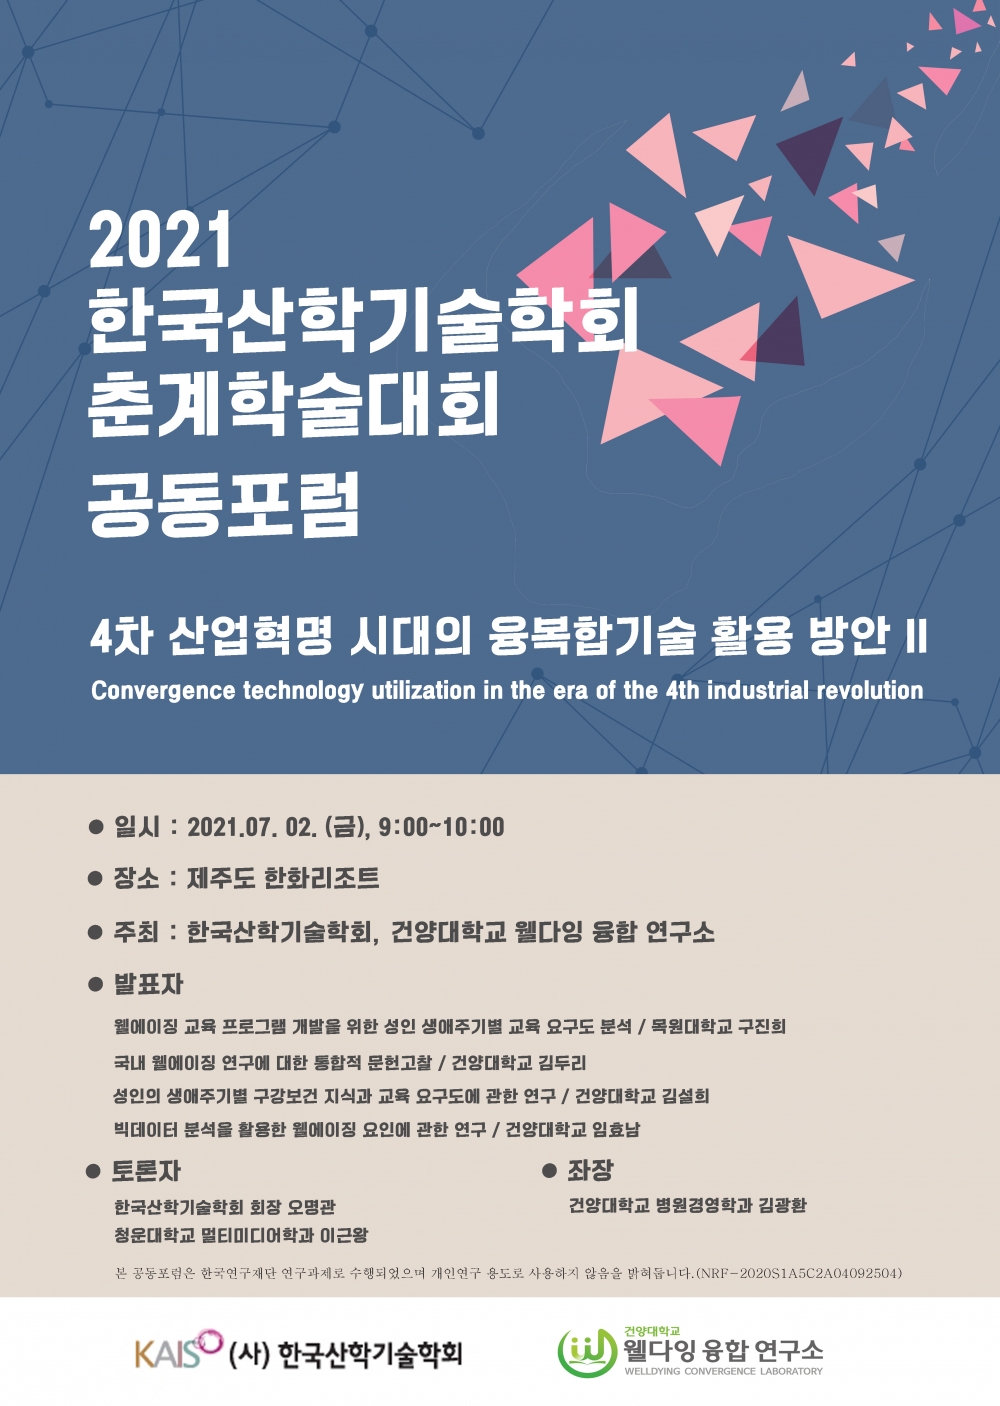 2021년 7월 2일 / 한국산학기술학회 참석하였습니다. 